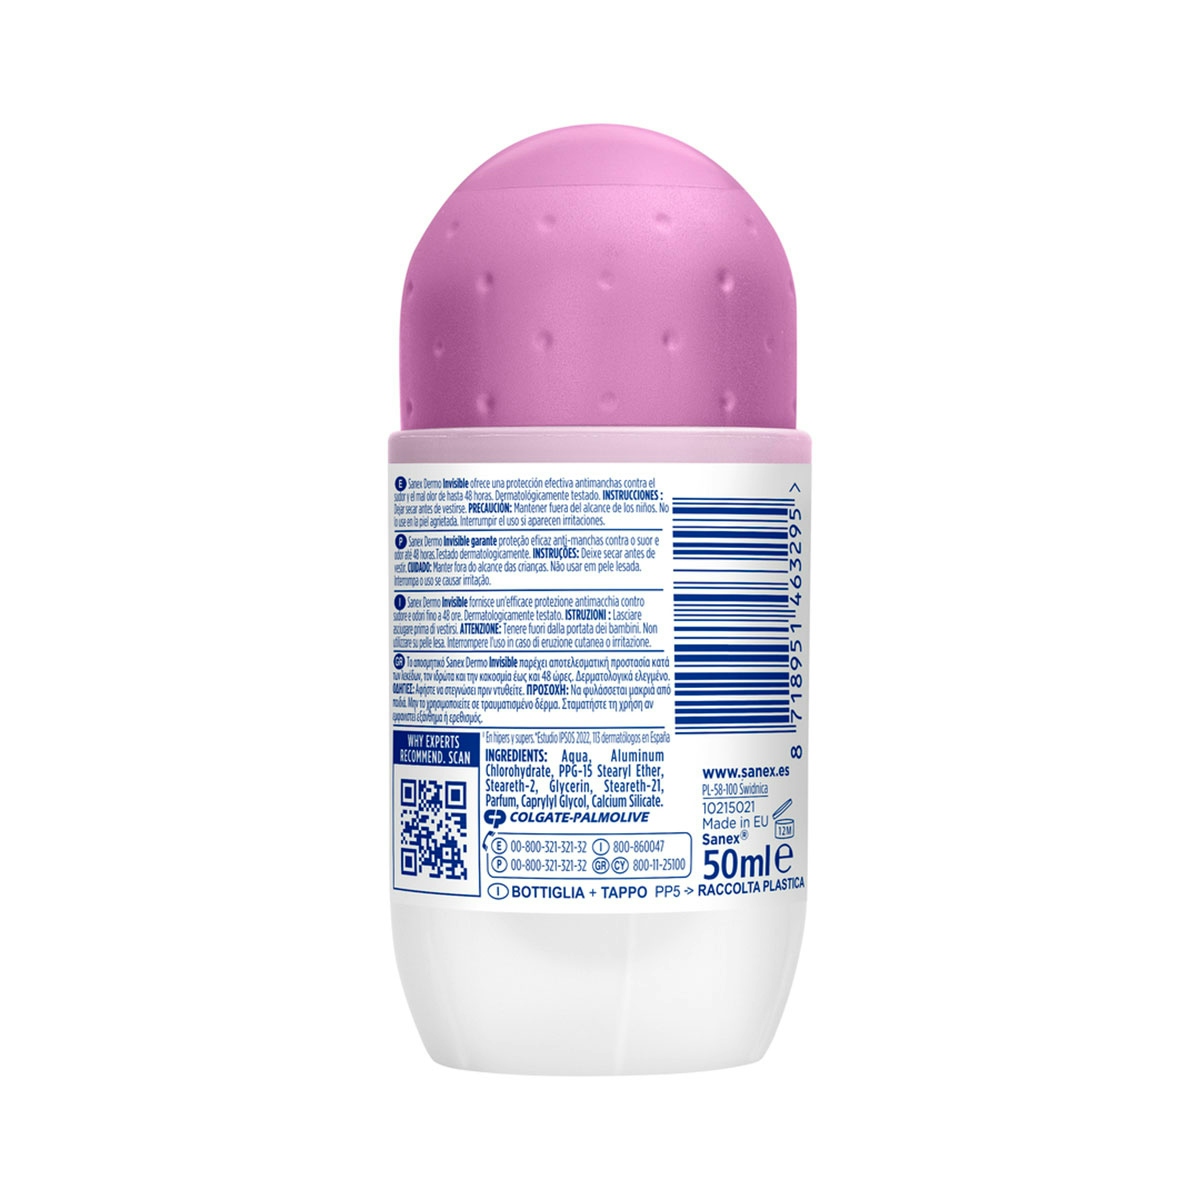 Desodorante roll-on Sanex pH Balance Dermo Invisible 48h antitranspirante 50ml